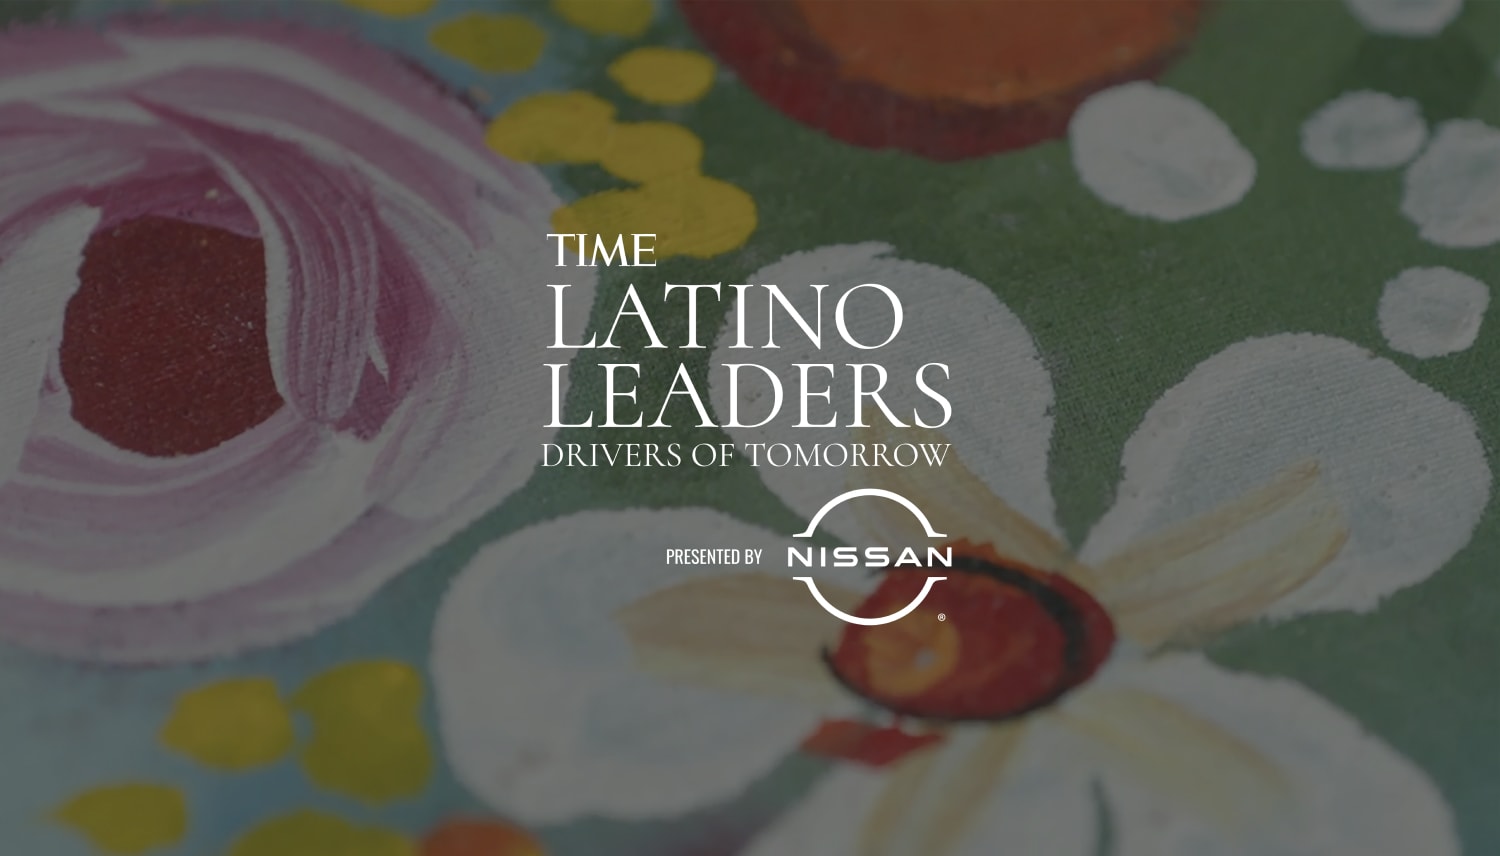 Nissan presenta a los Líderes Latinos de TIME